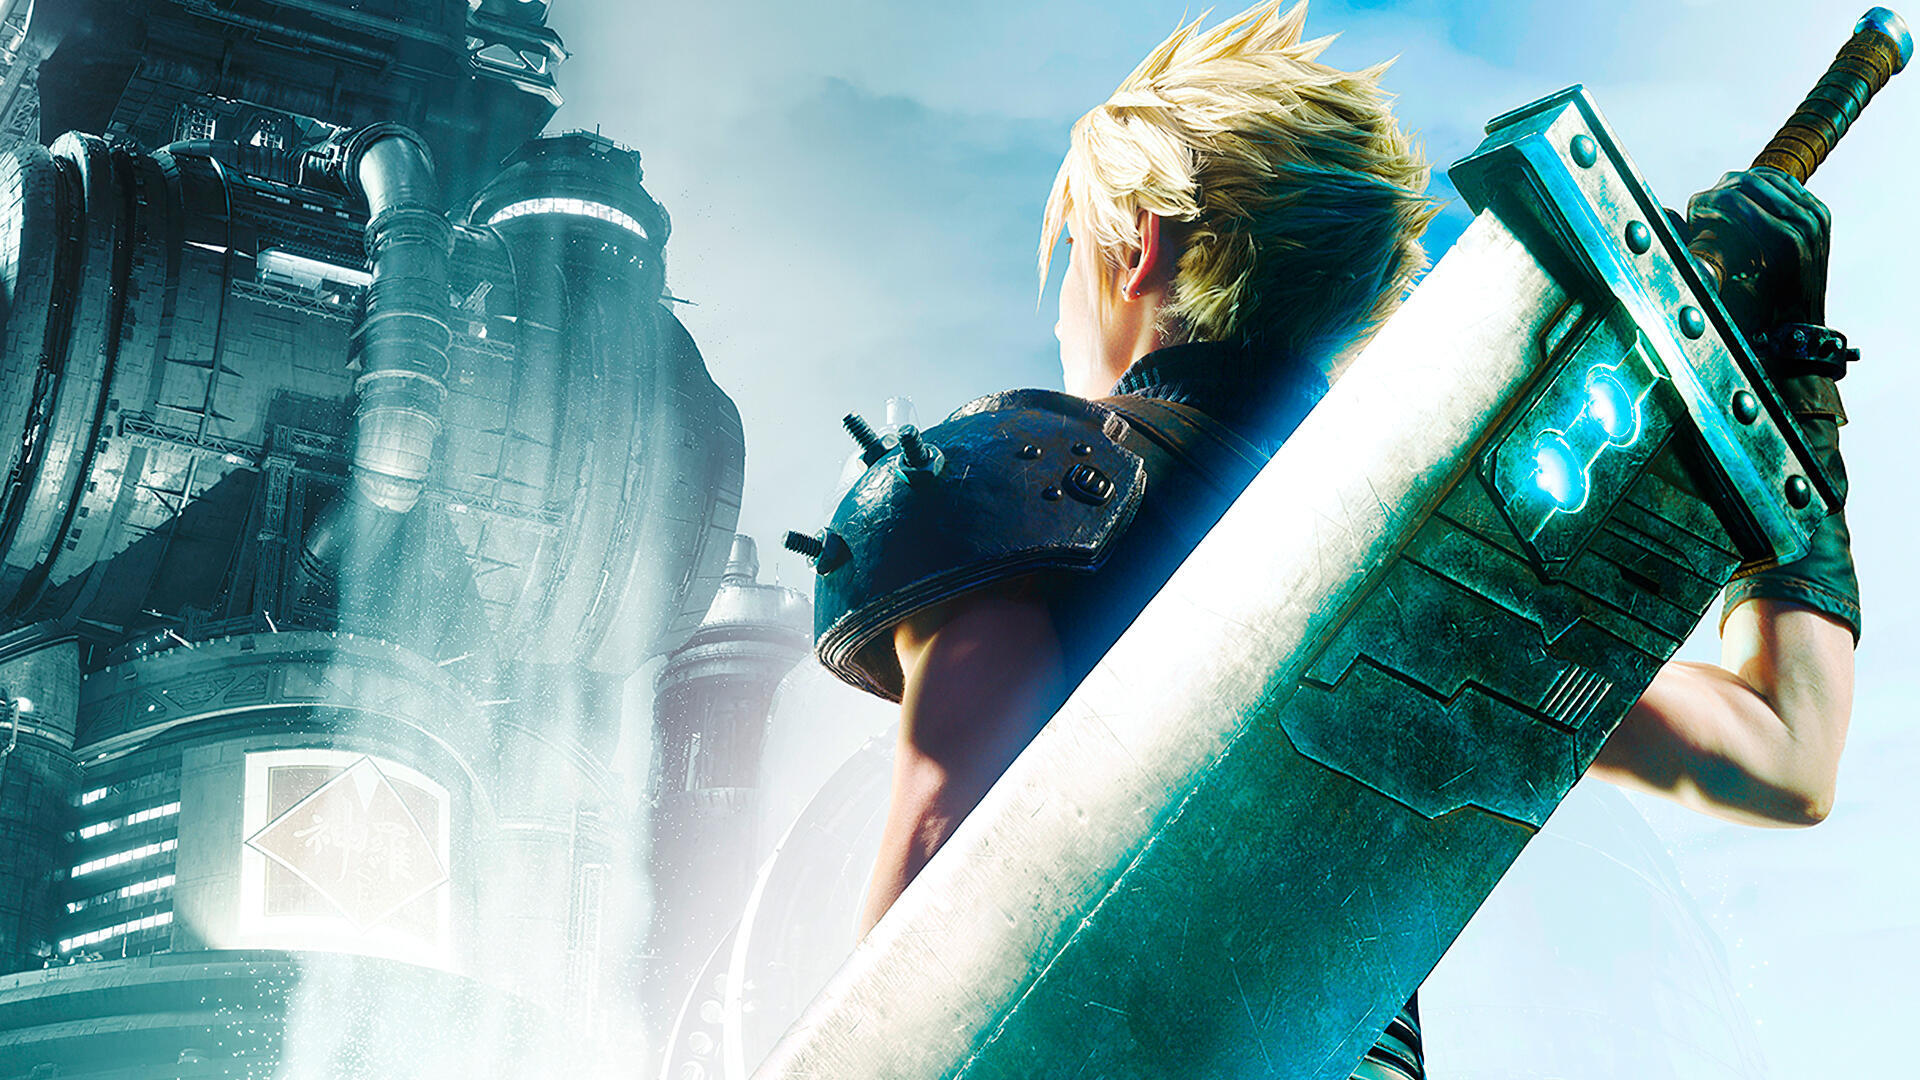 Los remakes de Final Fantasy VII están inspirados en un famoso clásico de Disney según su director